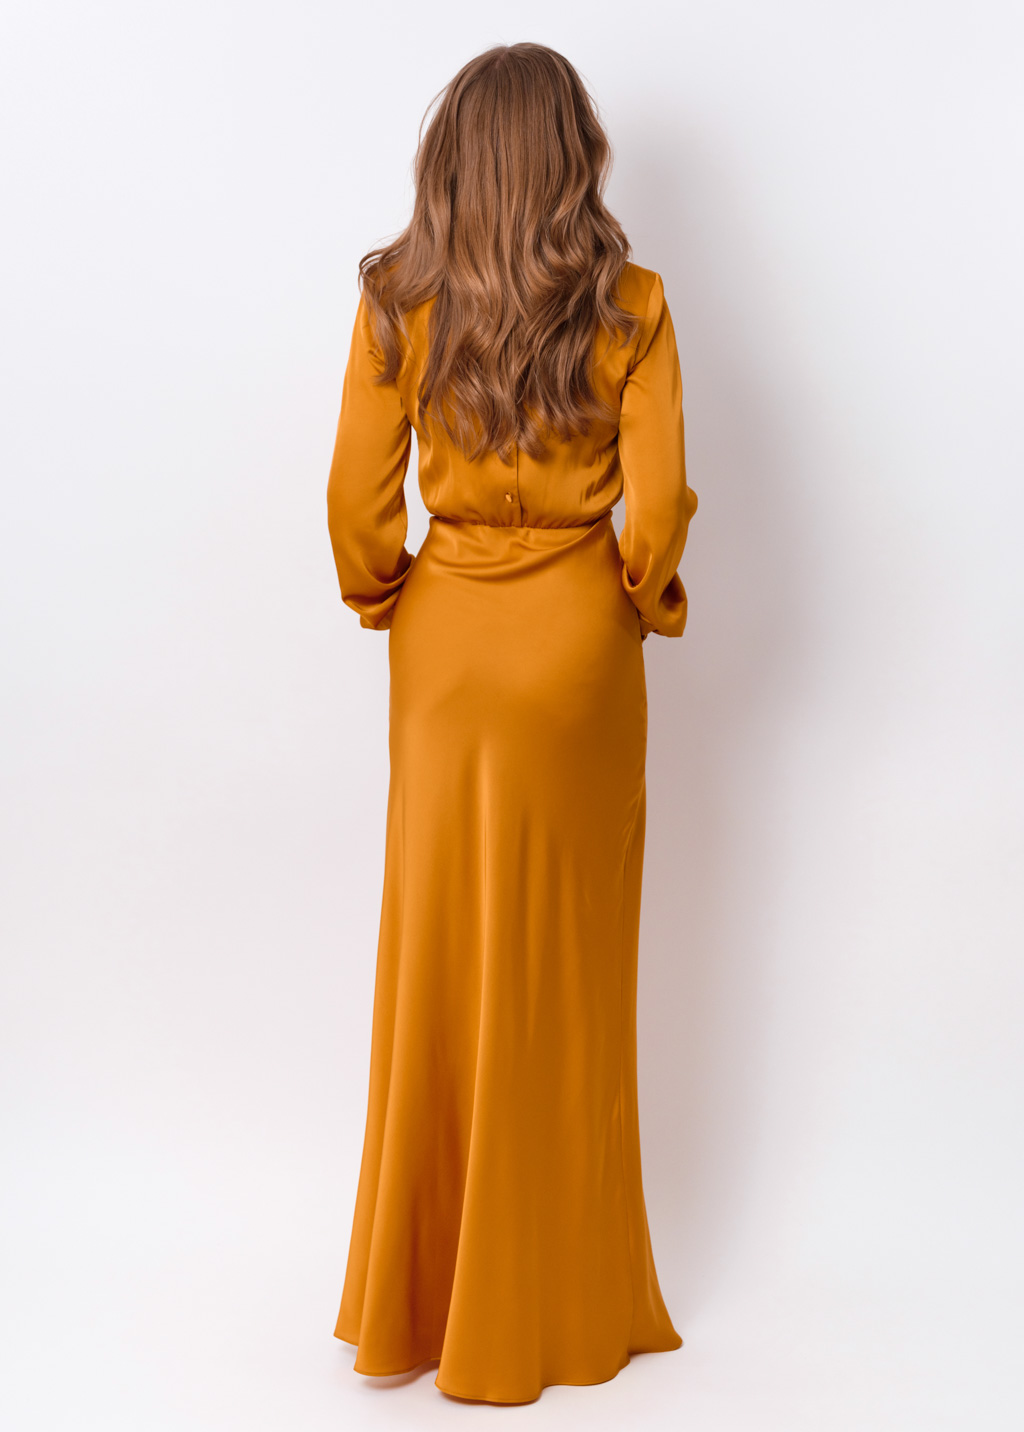 Gold silk long dress